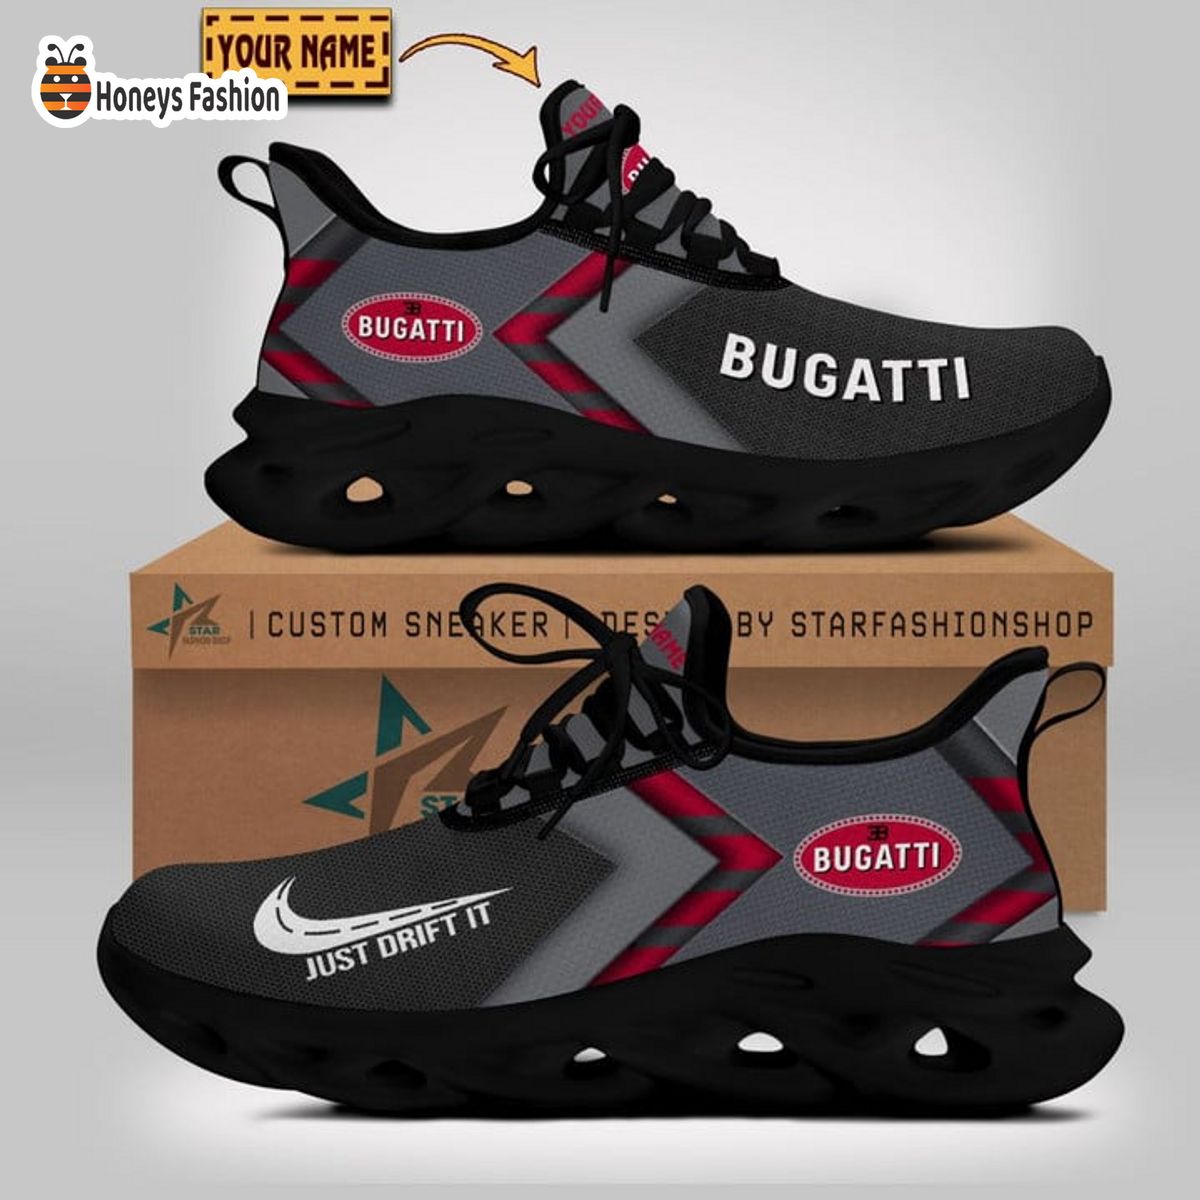 Bugati just drift it max soul sneaker